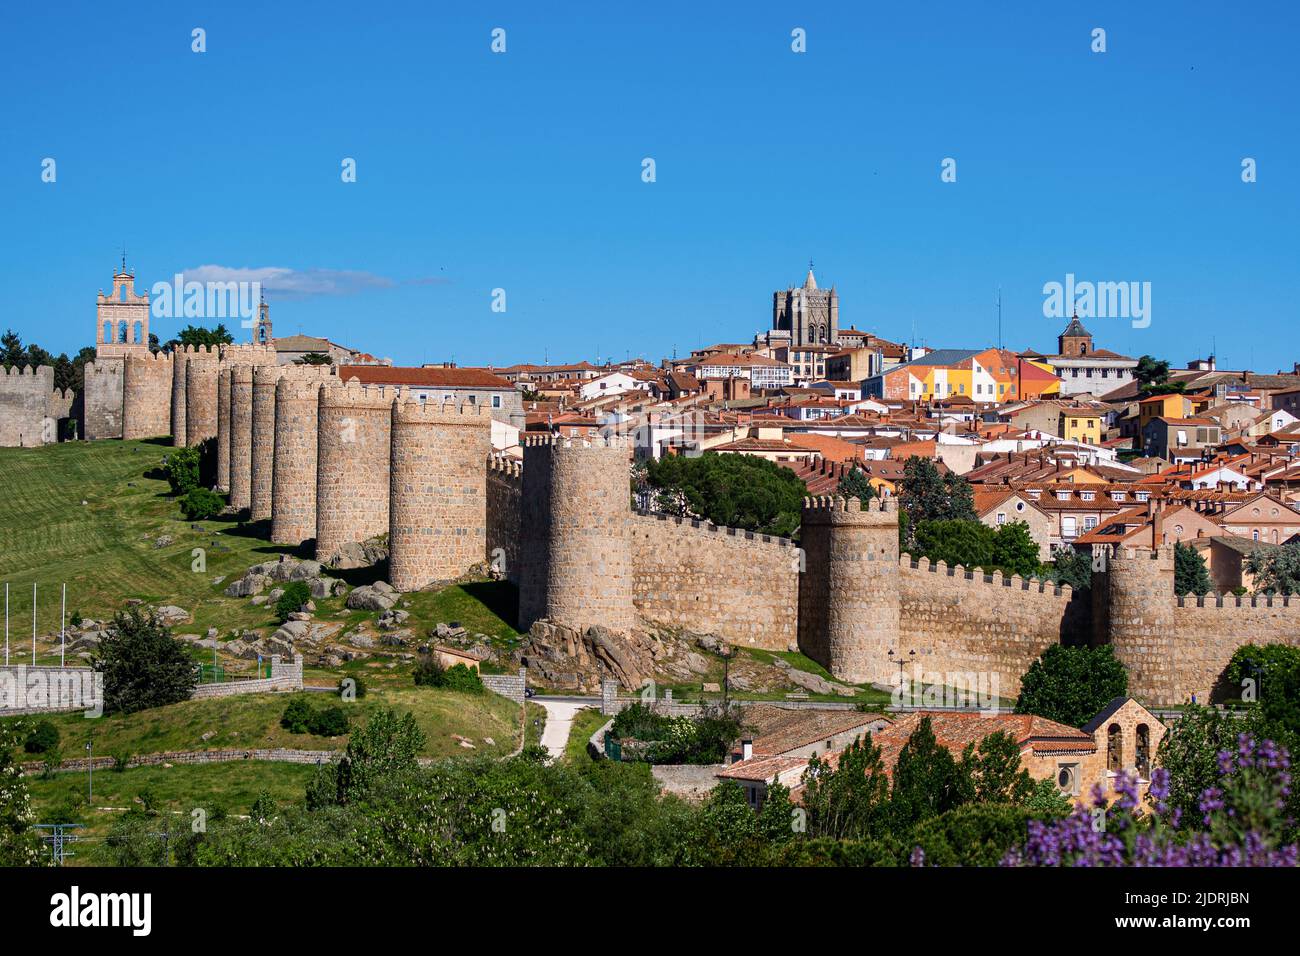 Ávila Stadtmauer, Spanien. Nordmauer und Altstadt. Stammt aus dem Jahr 1090, wurde aber größtenteils im 12.. Jahrhundert wieder aufgebaut. Blick von Cuatro Postes. Stockfoto